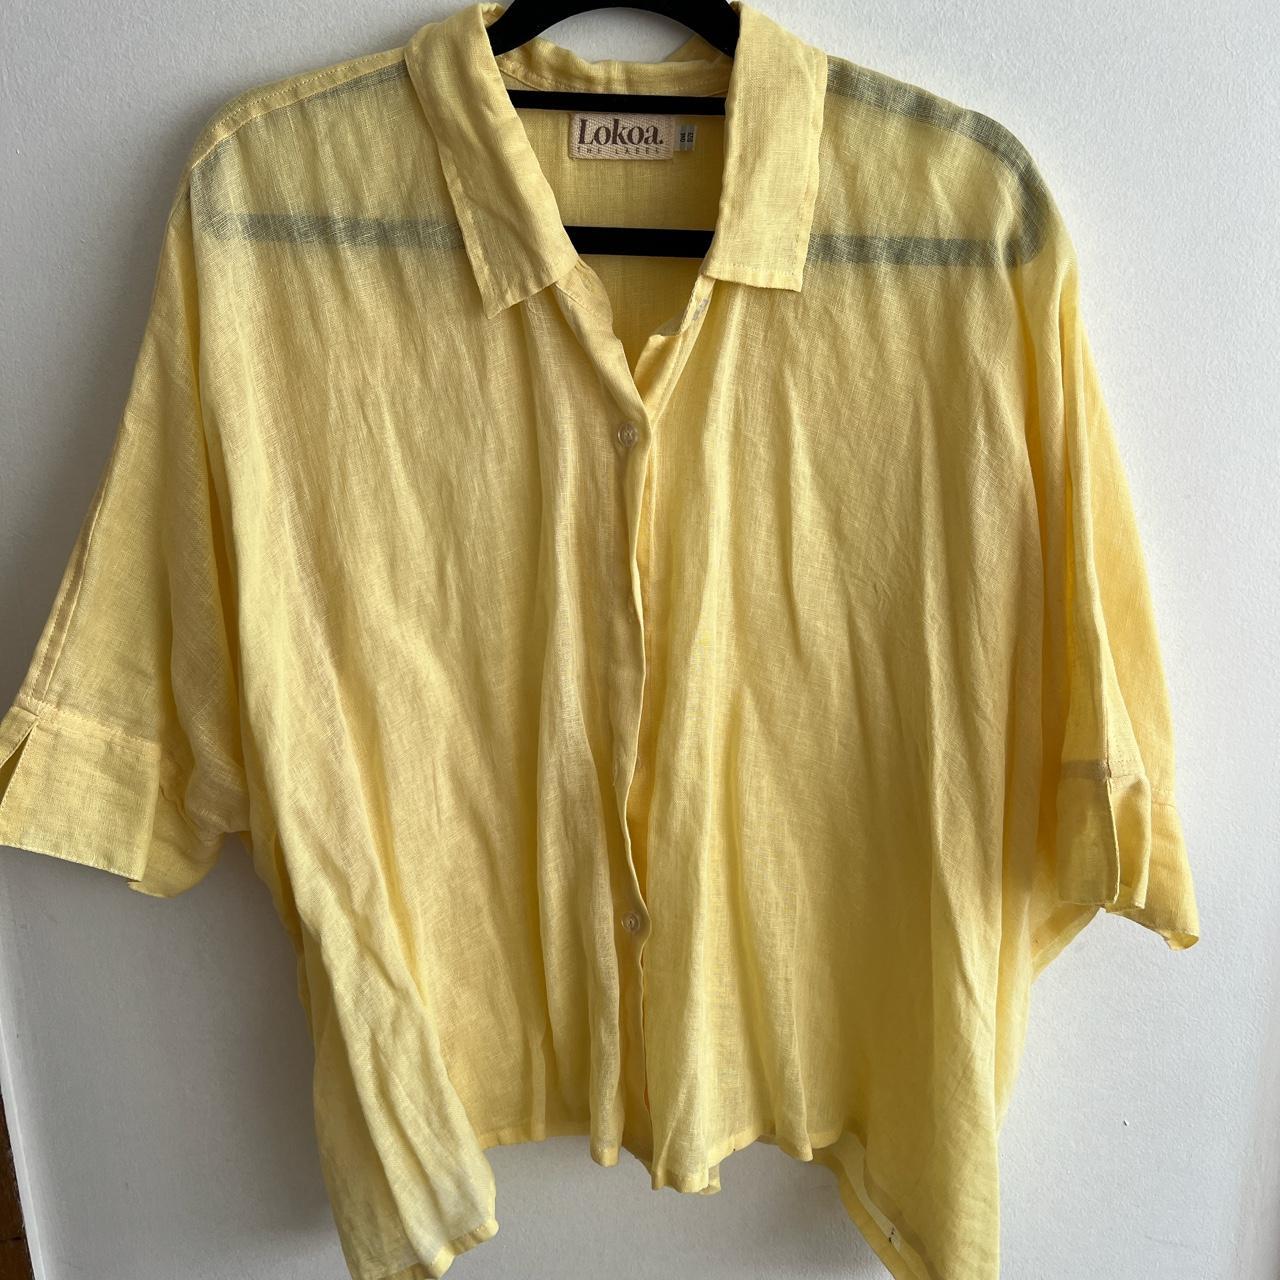 🌺 Button up shirt 🌺 Sheer lightweight fabric 🌺 Fit... - Depop